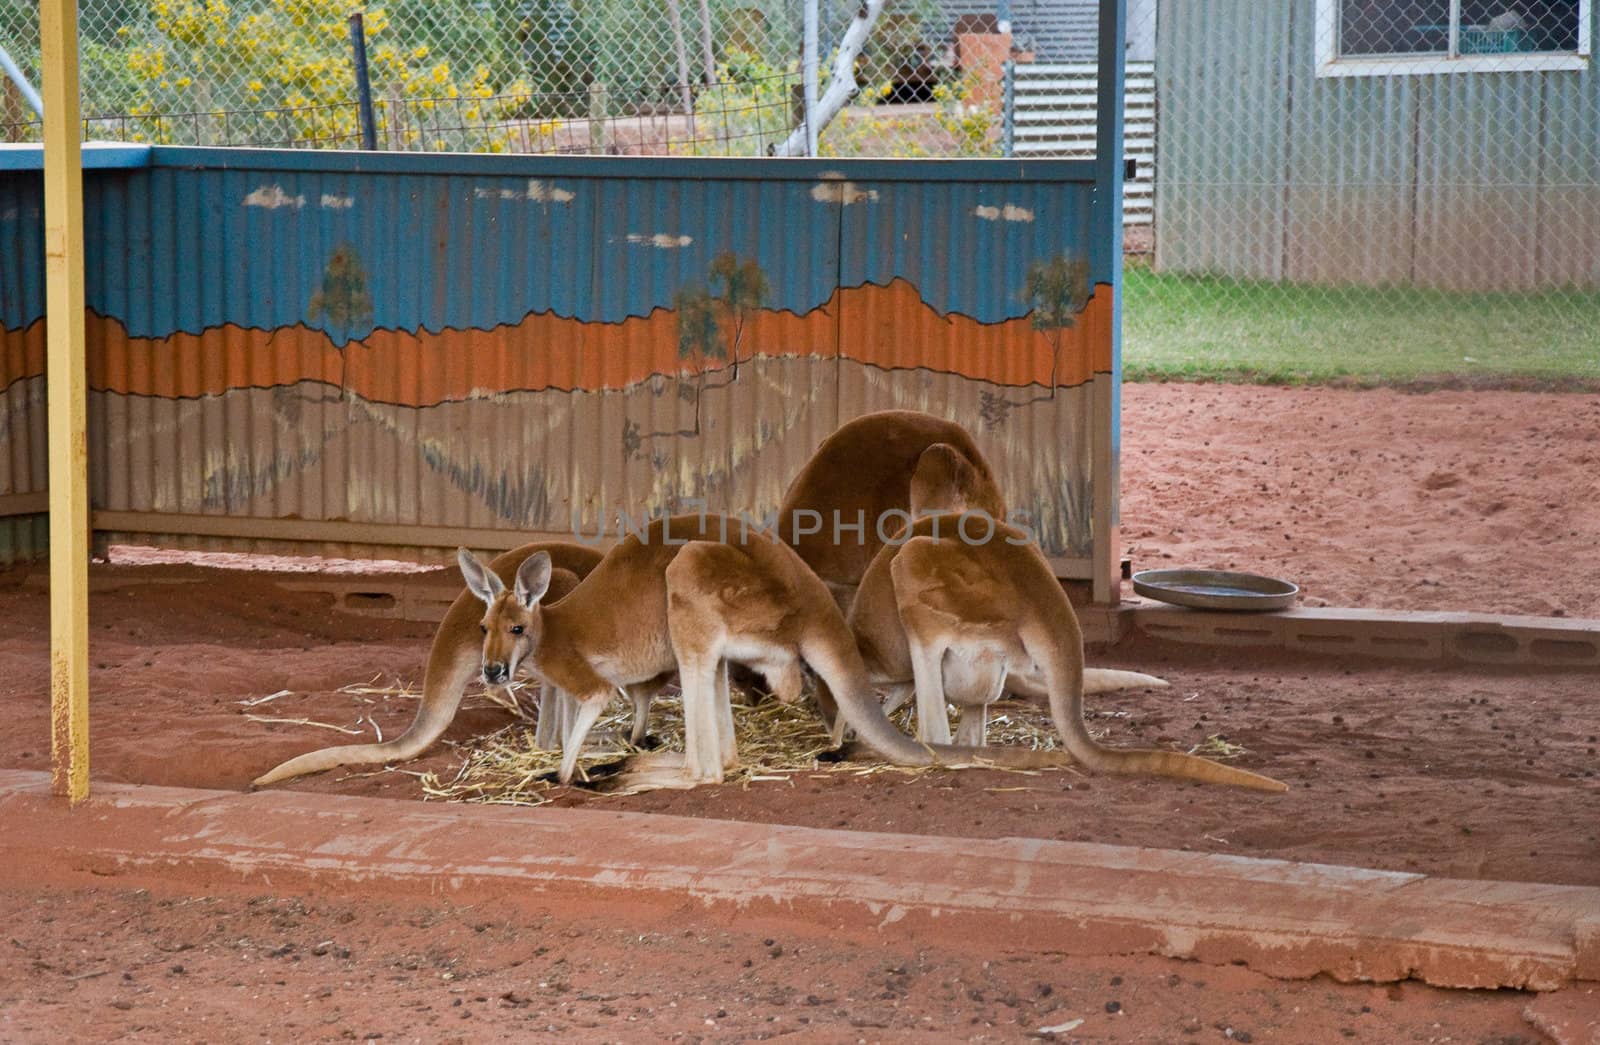 kangaroo in a small farm in australia